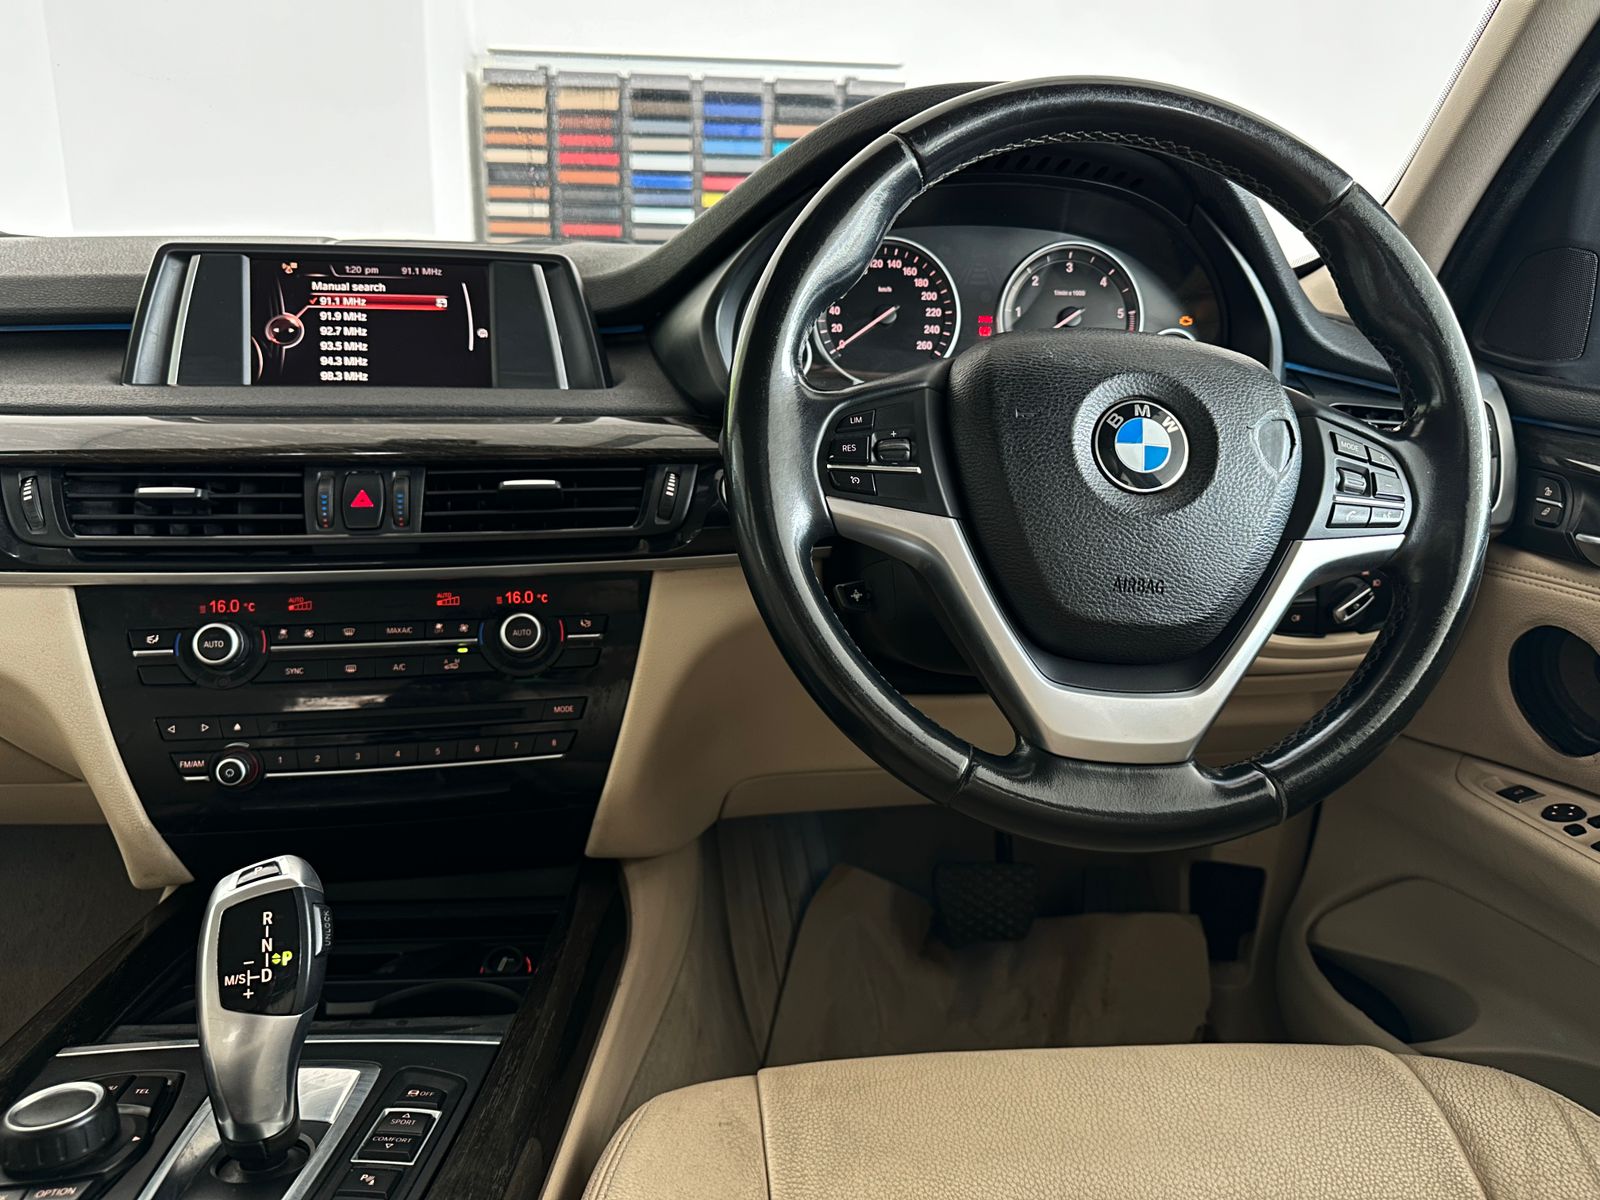 BMW X5 - 2015 model - 91439 kms steering